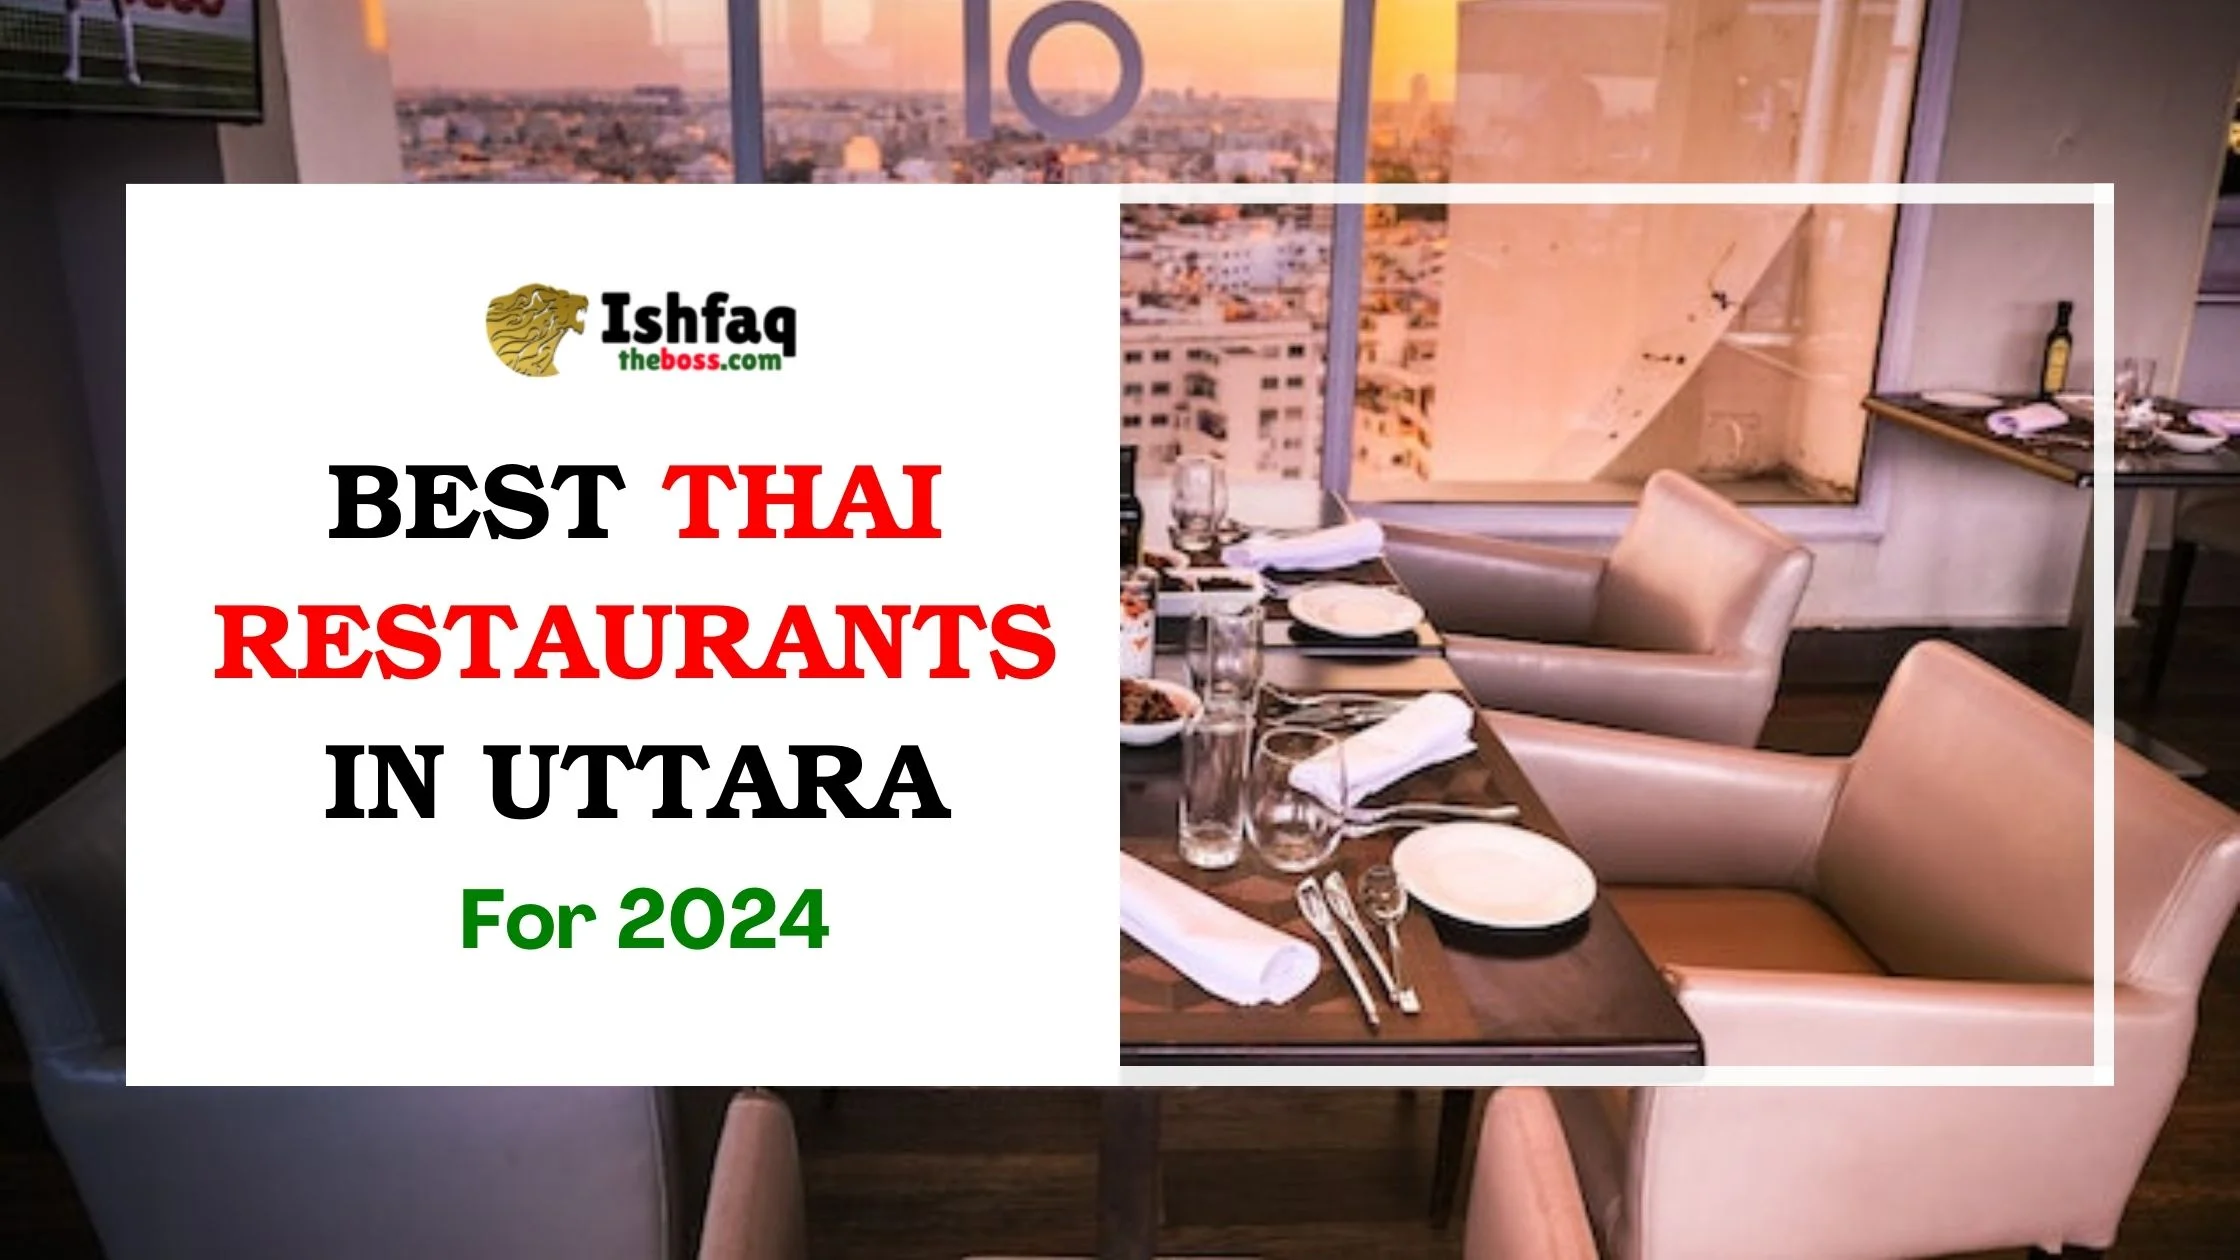 Best Thai Restaurants in Uttara for 2024